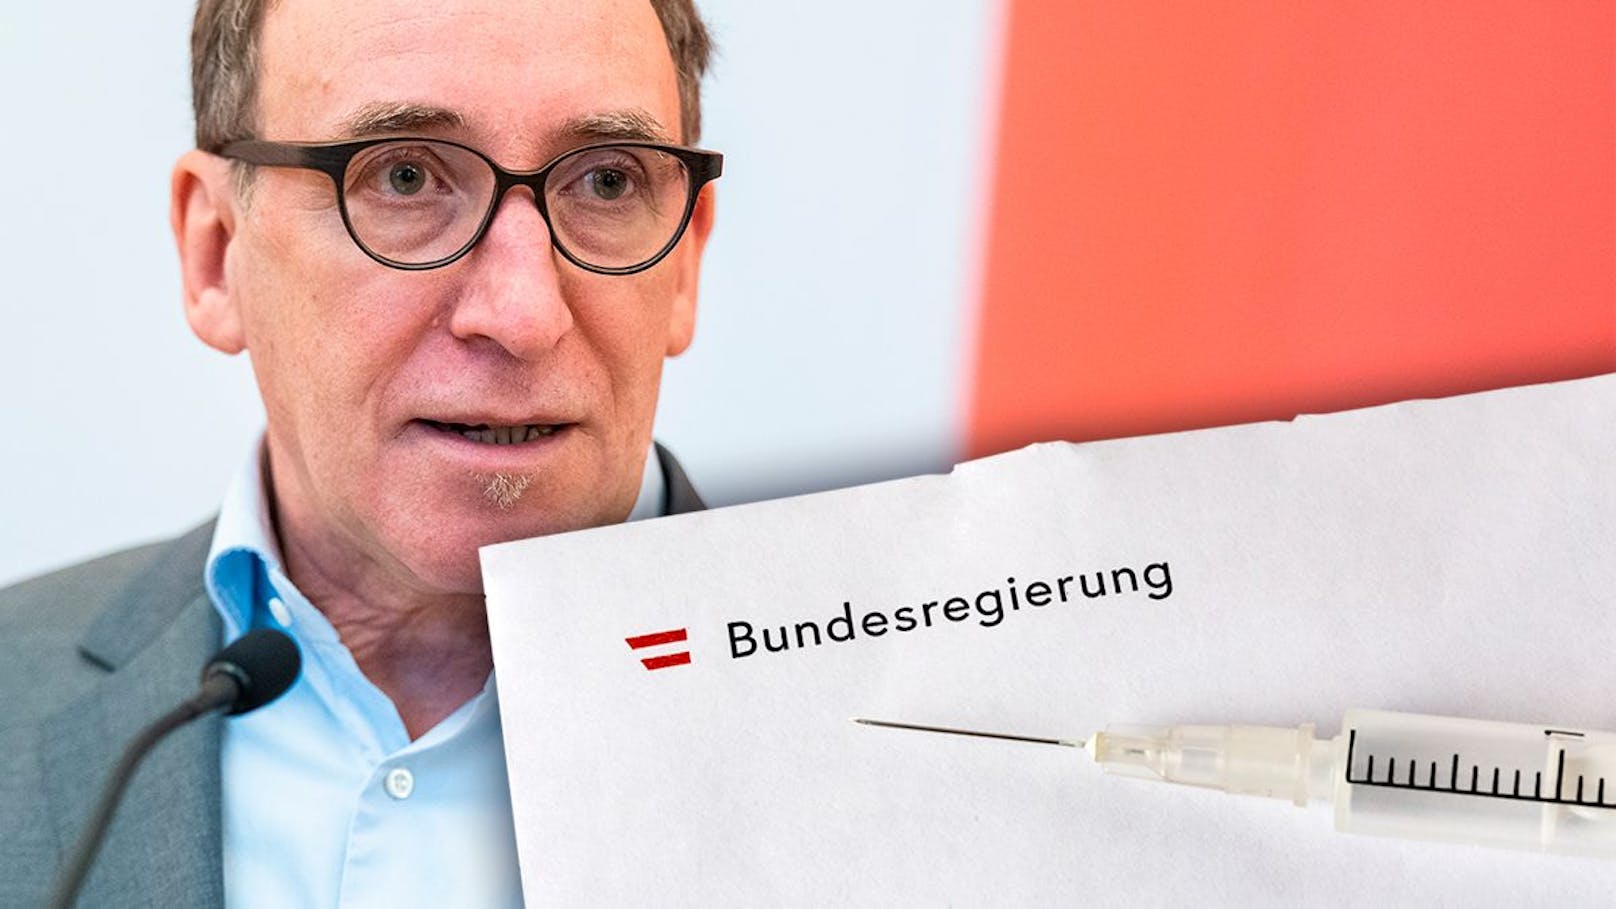 Minister schickt jedem Österreicher neuen Impf-Brief